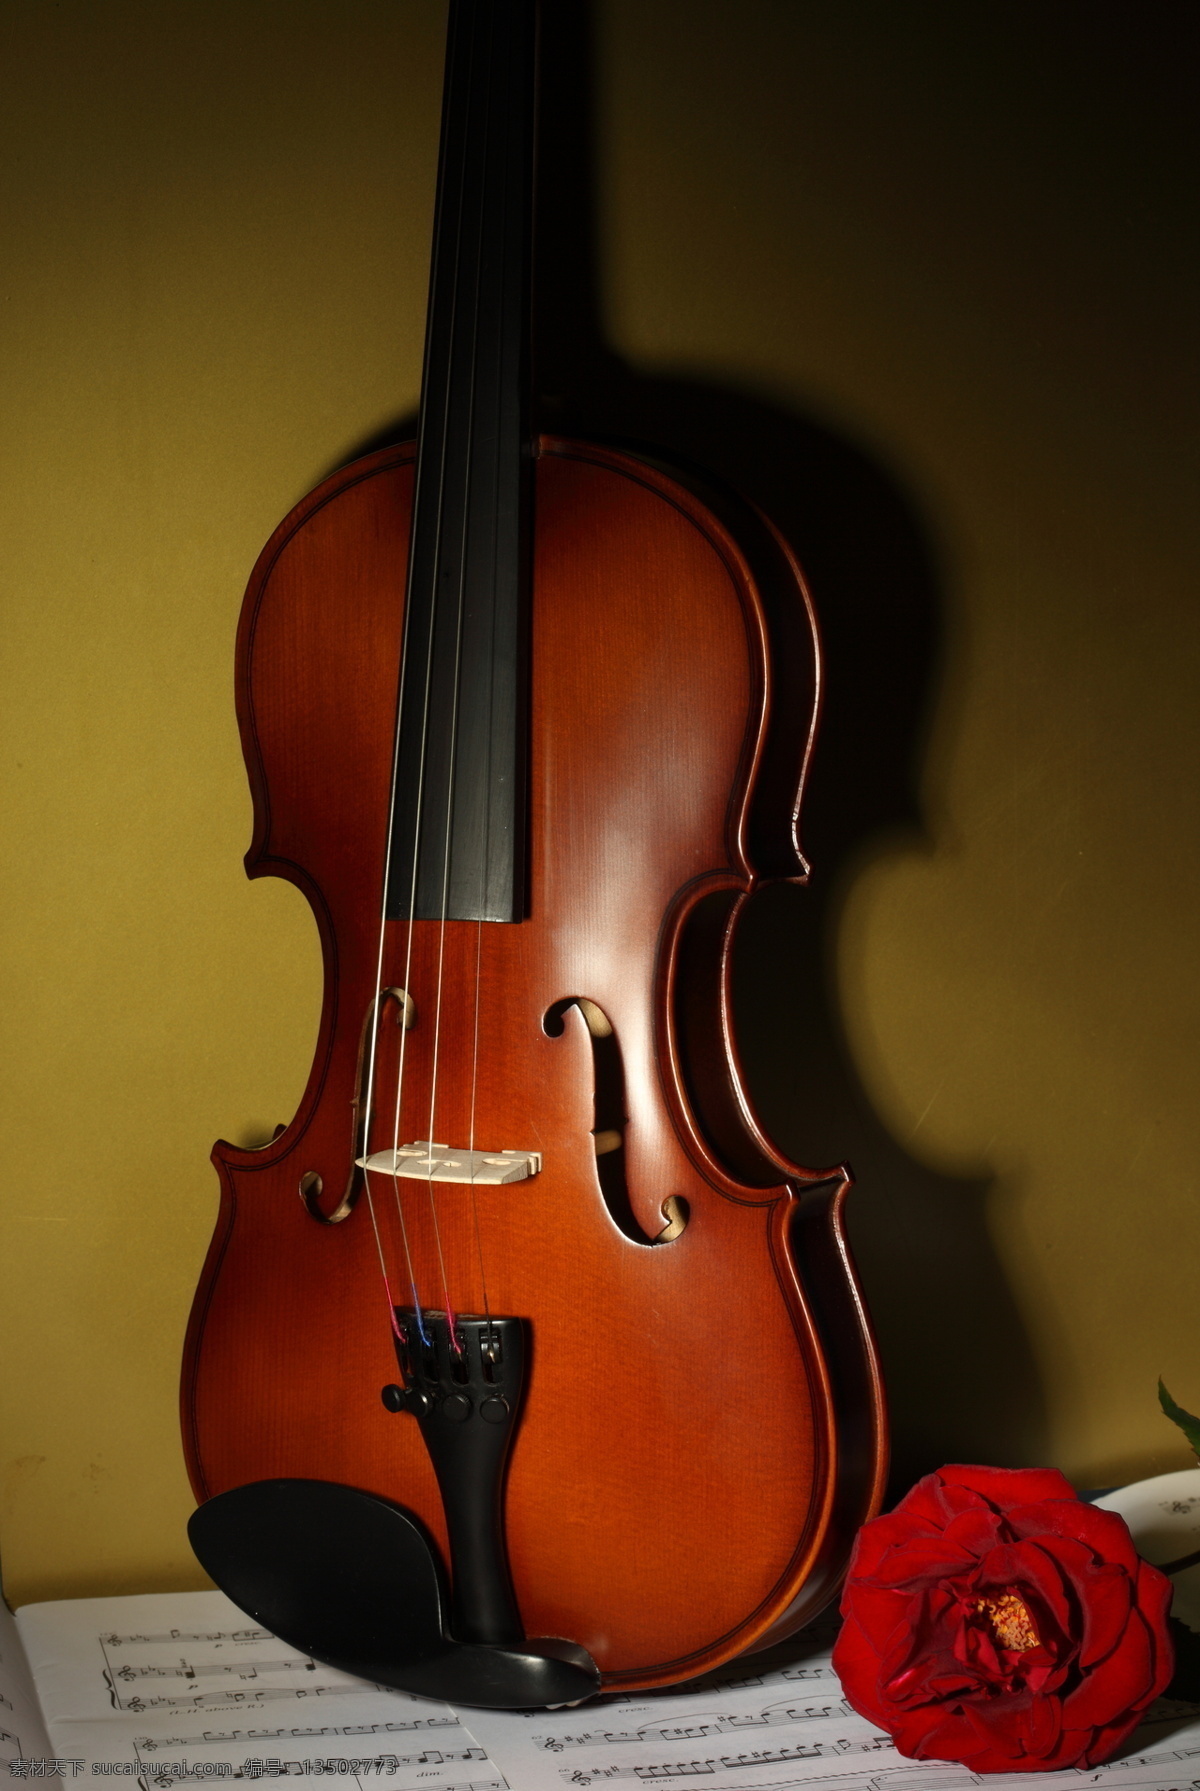 小提琴 音符 乐谱 中提琴 文化艺术 音乐 玫瑰 玫瑰花 鲜花 影音娱乐 生活百科